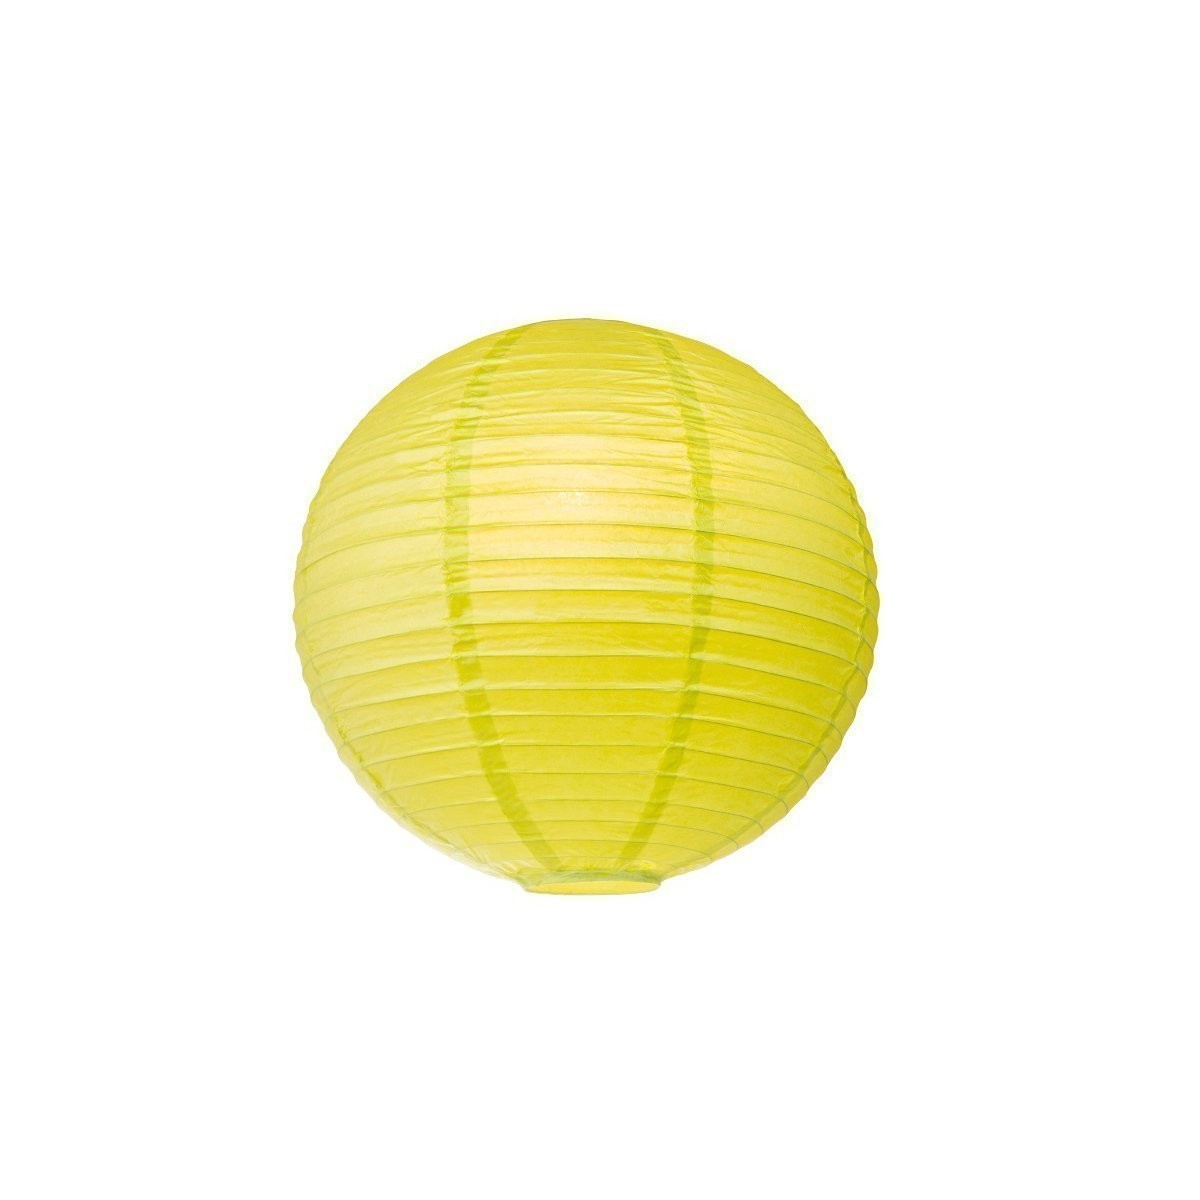 Lampion aus Papier – gelbgrün – 40cm – für E27 Hängefassungen oder …